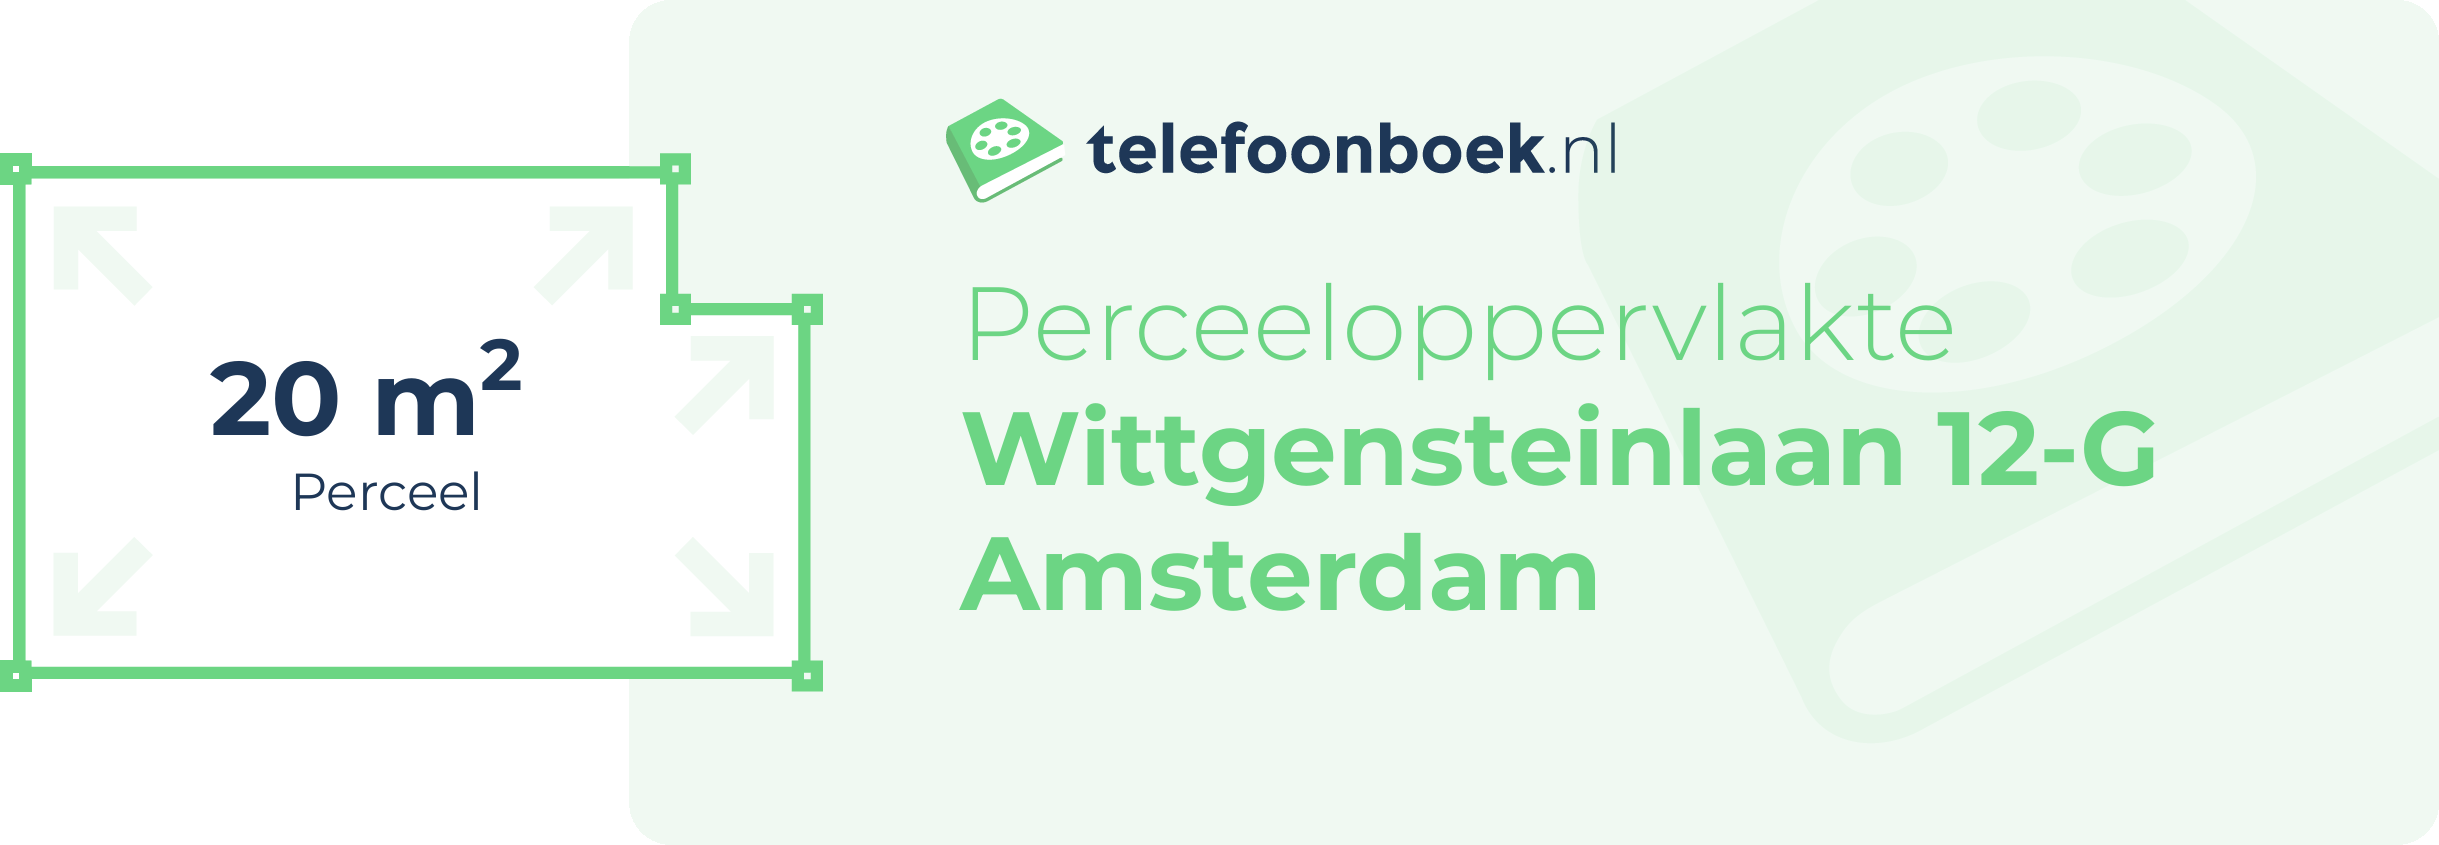 Perceeloppervlakte Wittgensteinlaan 12-G Amsterdam